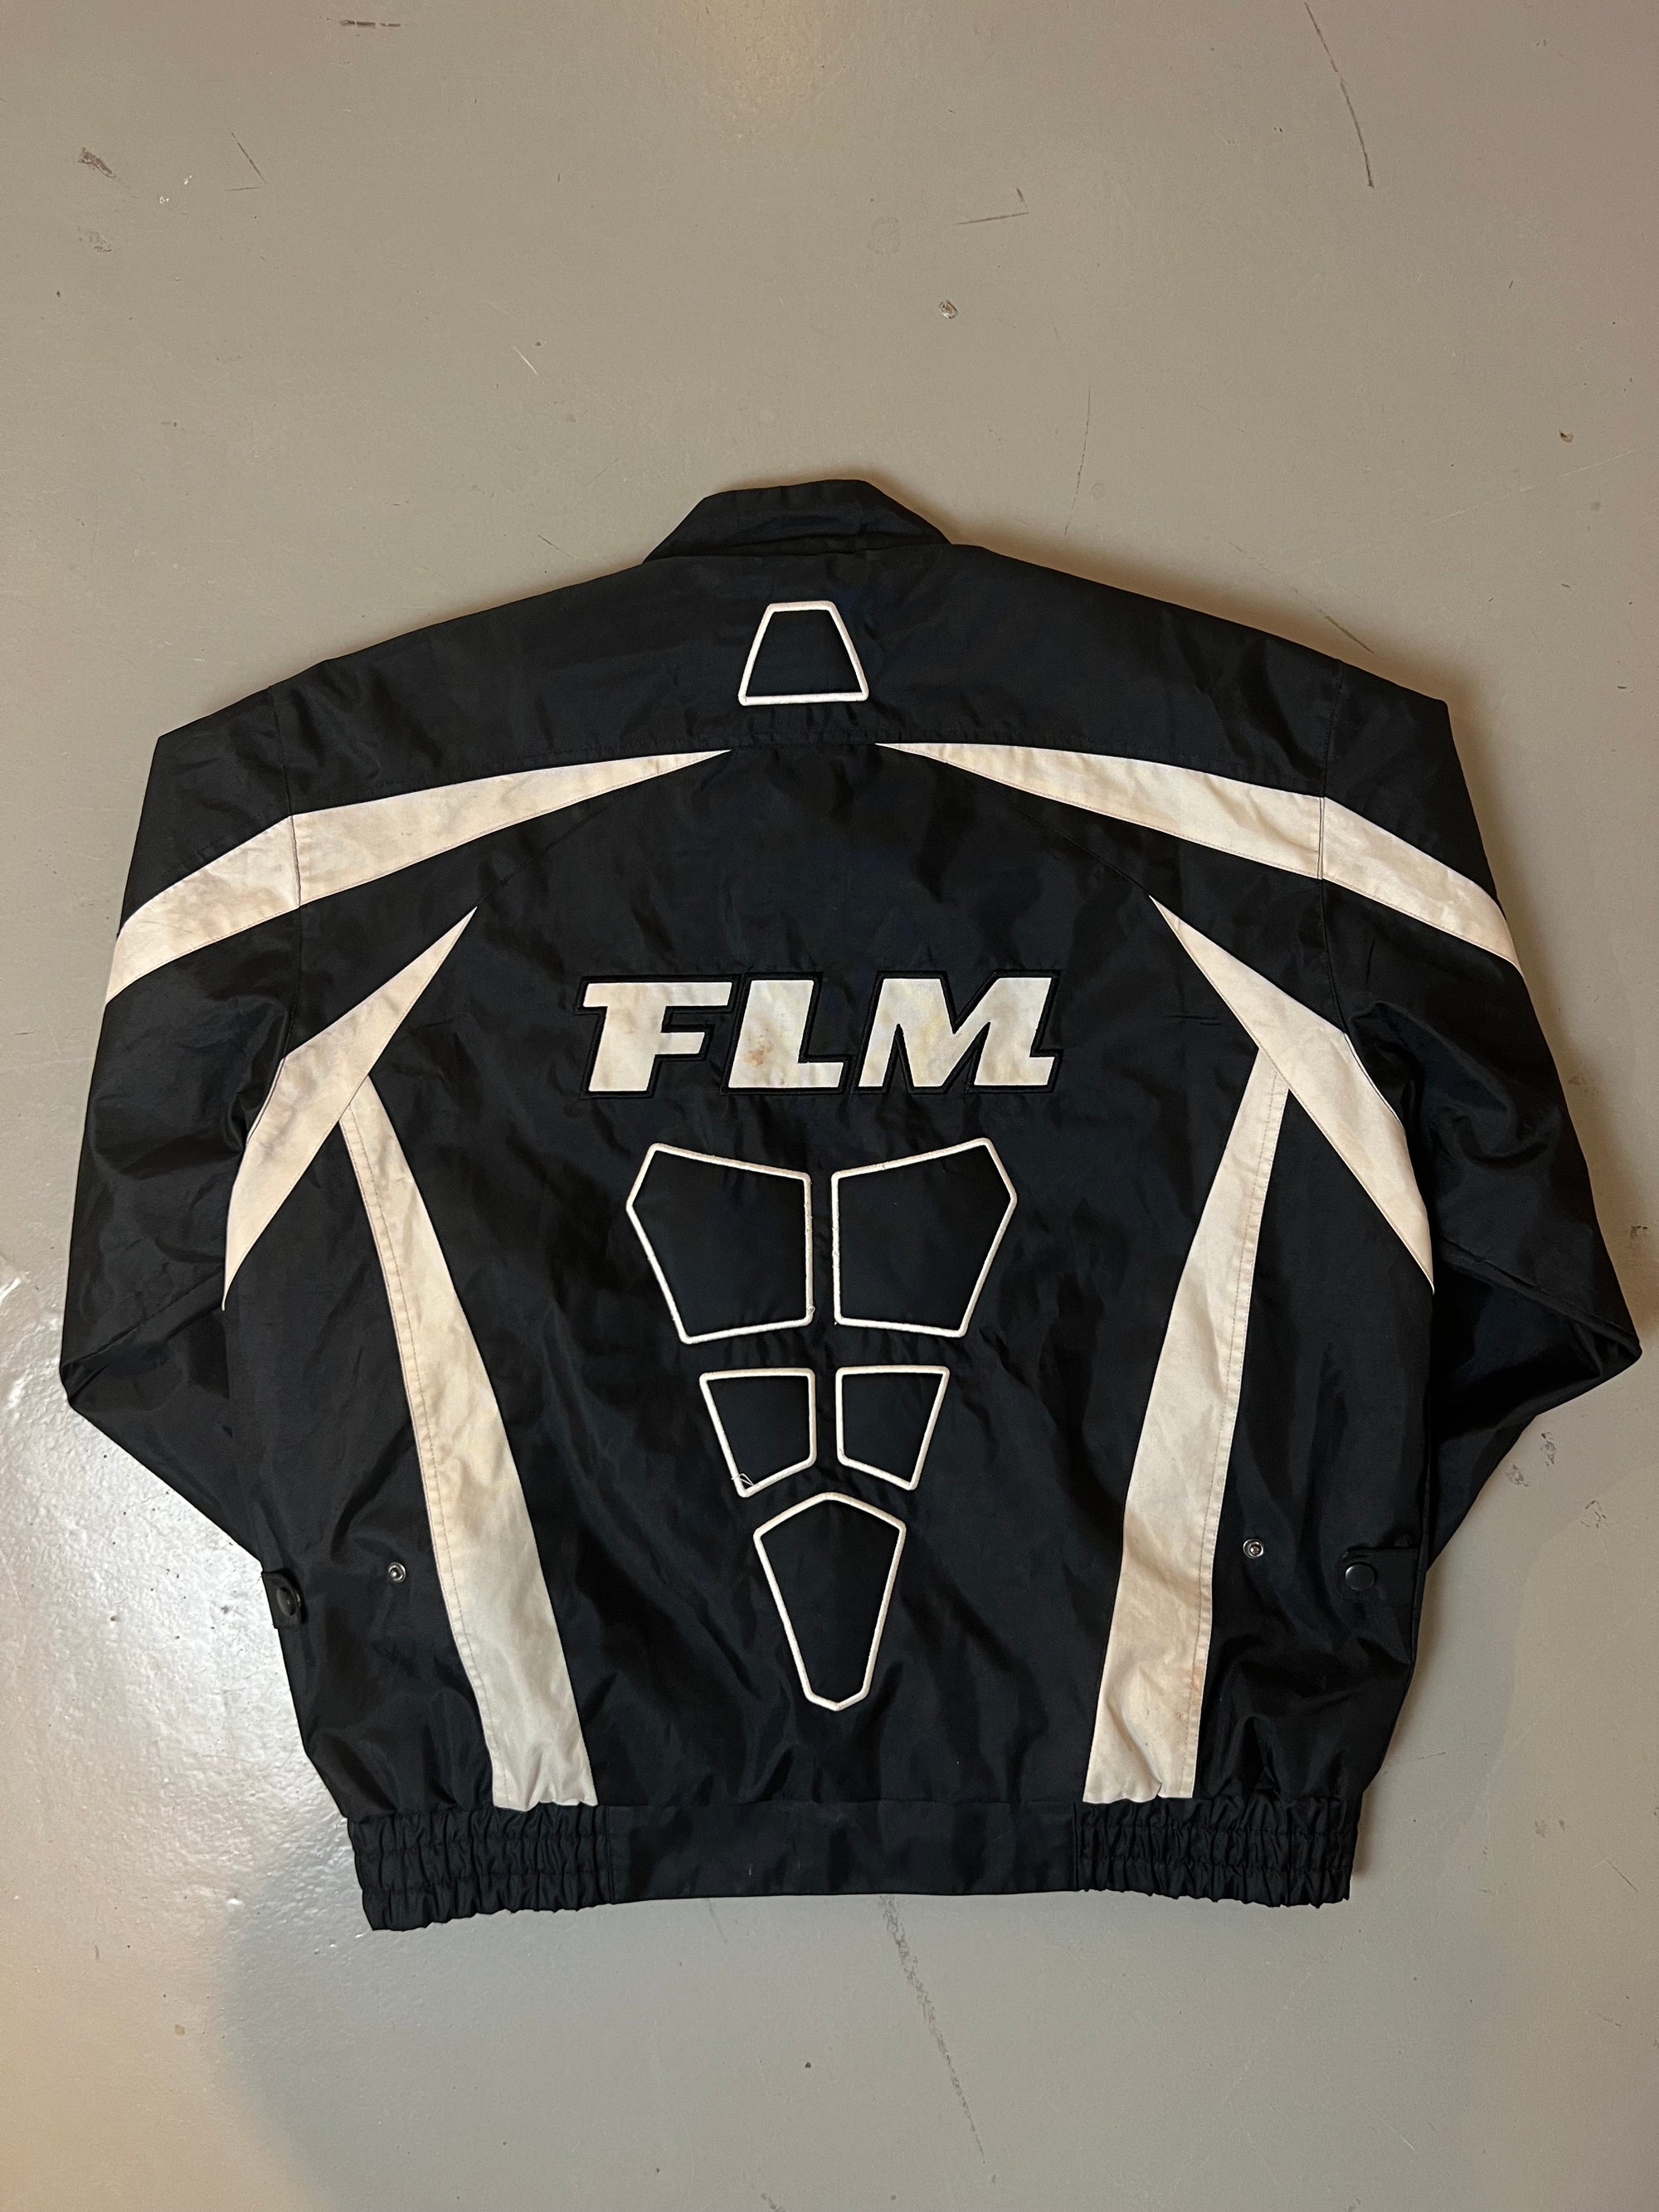 Produkt Bild Vintage FLM Racing Jacket von hinten